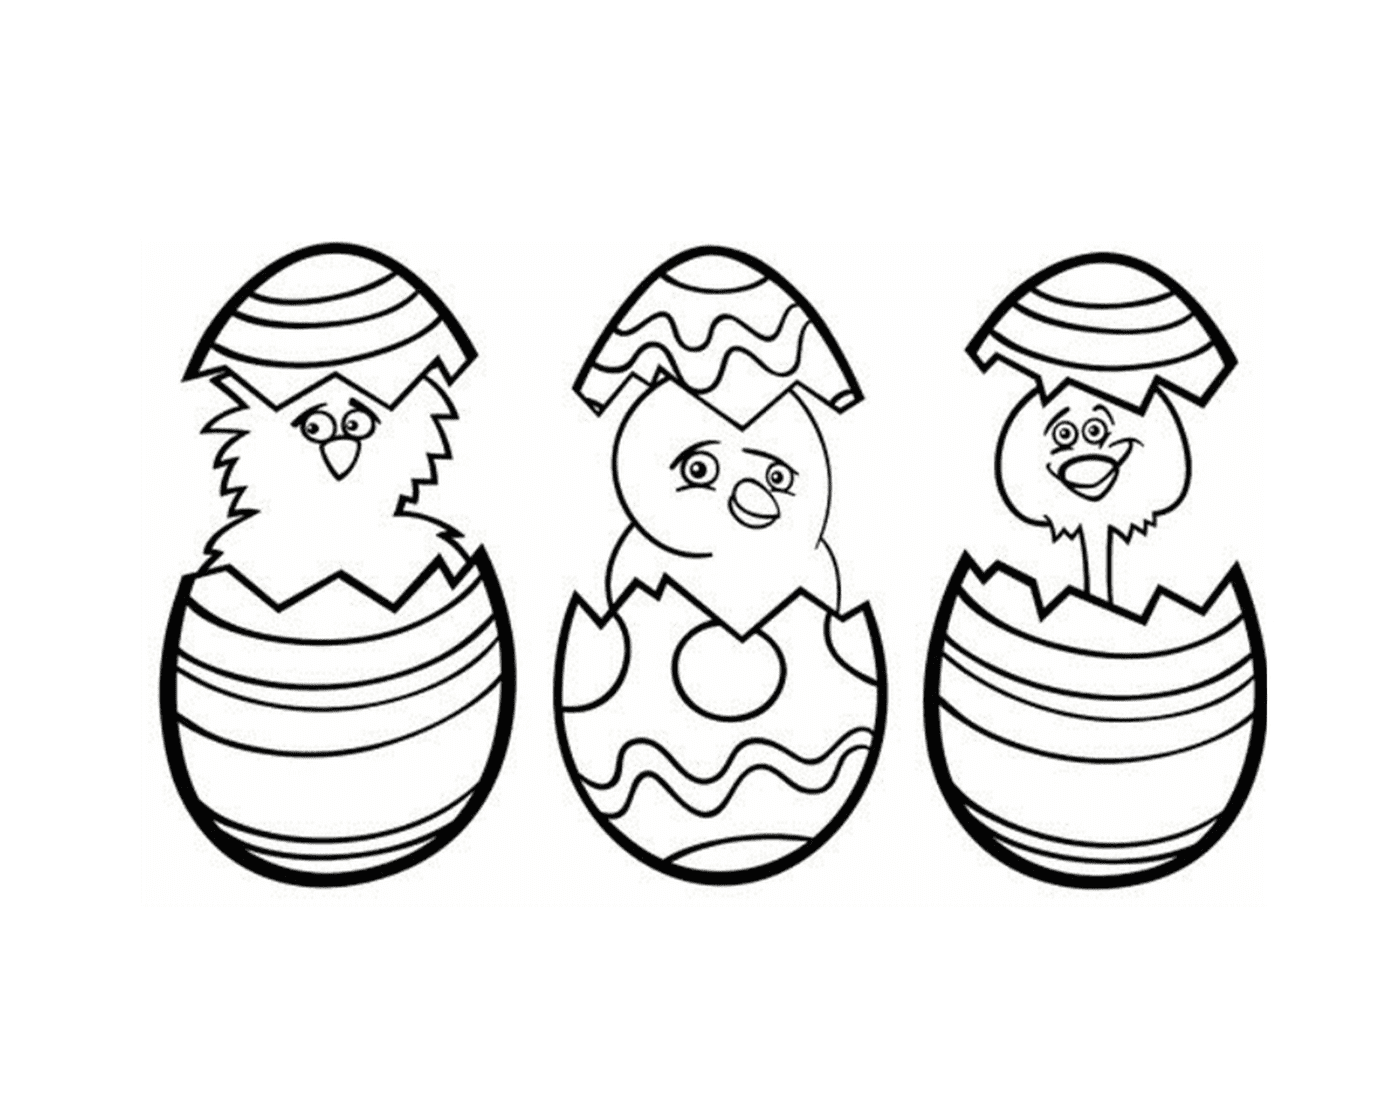  三个可爱的小鸡孵化 